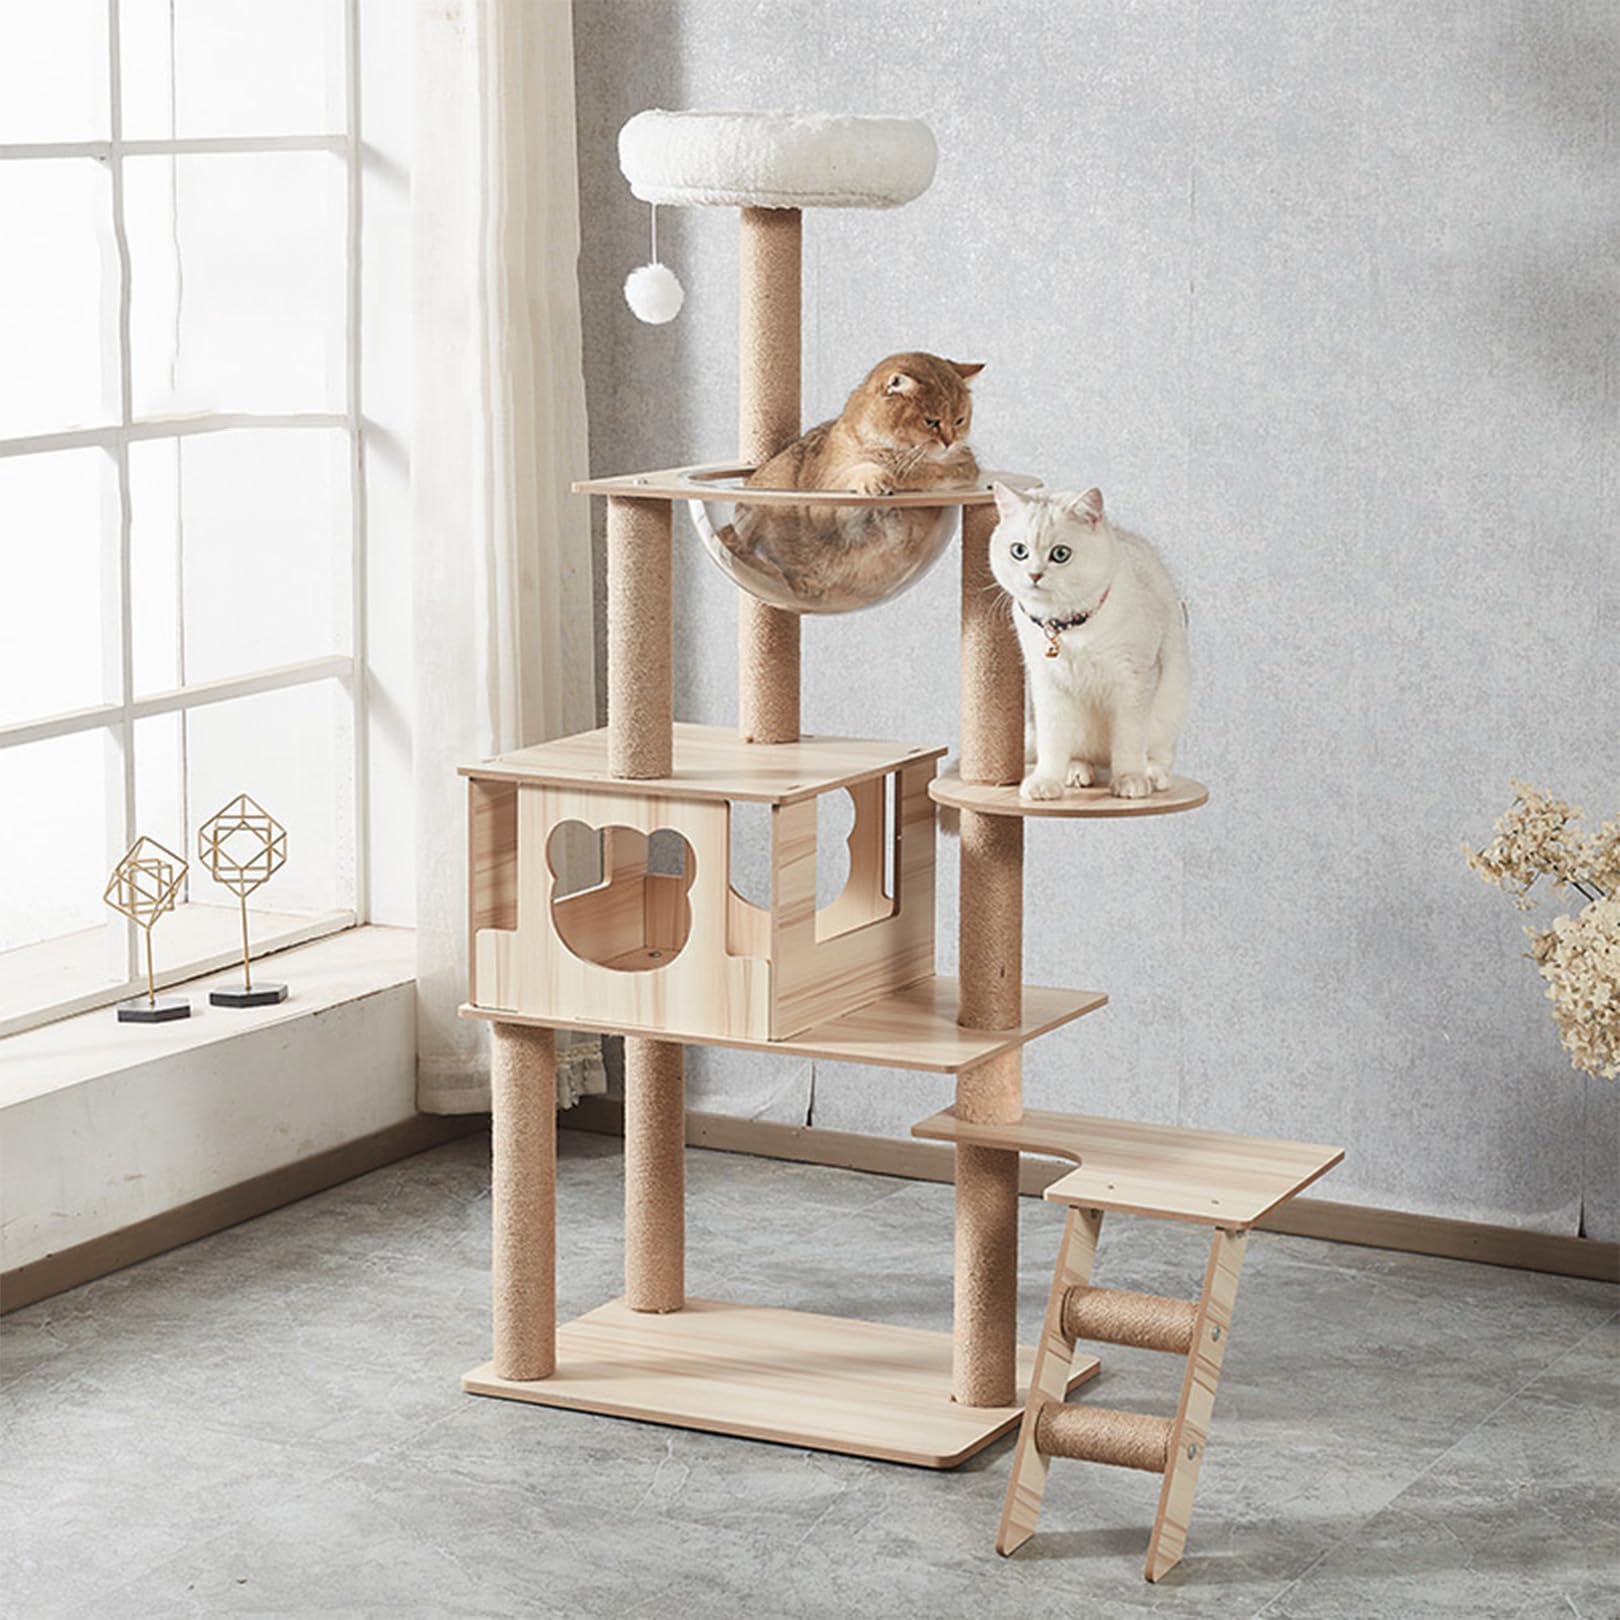 Kratzbaum, 55" moderner Katzenturm mit Katzenwohnung, Katzenklo-Gehäusemöbel aus Holz mit großer transparenter Raumkapsel-Sitzstange für große/fette Katzen